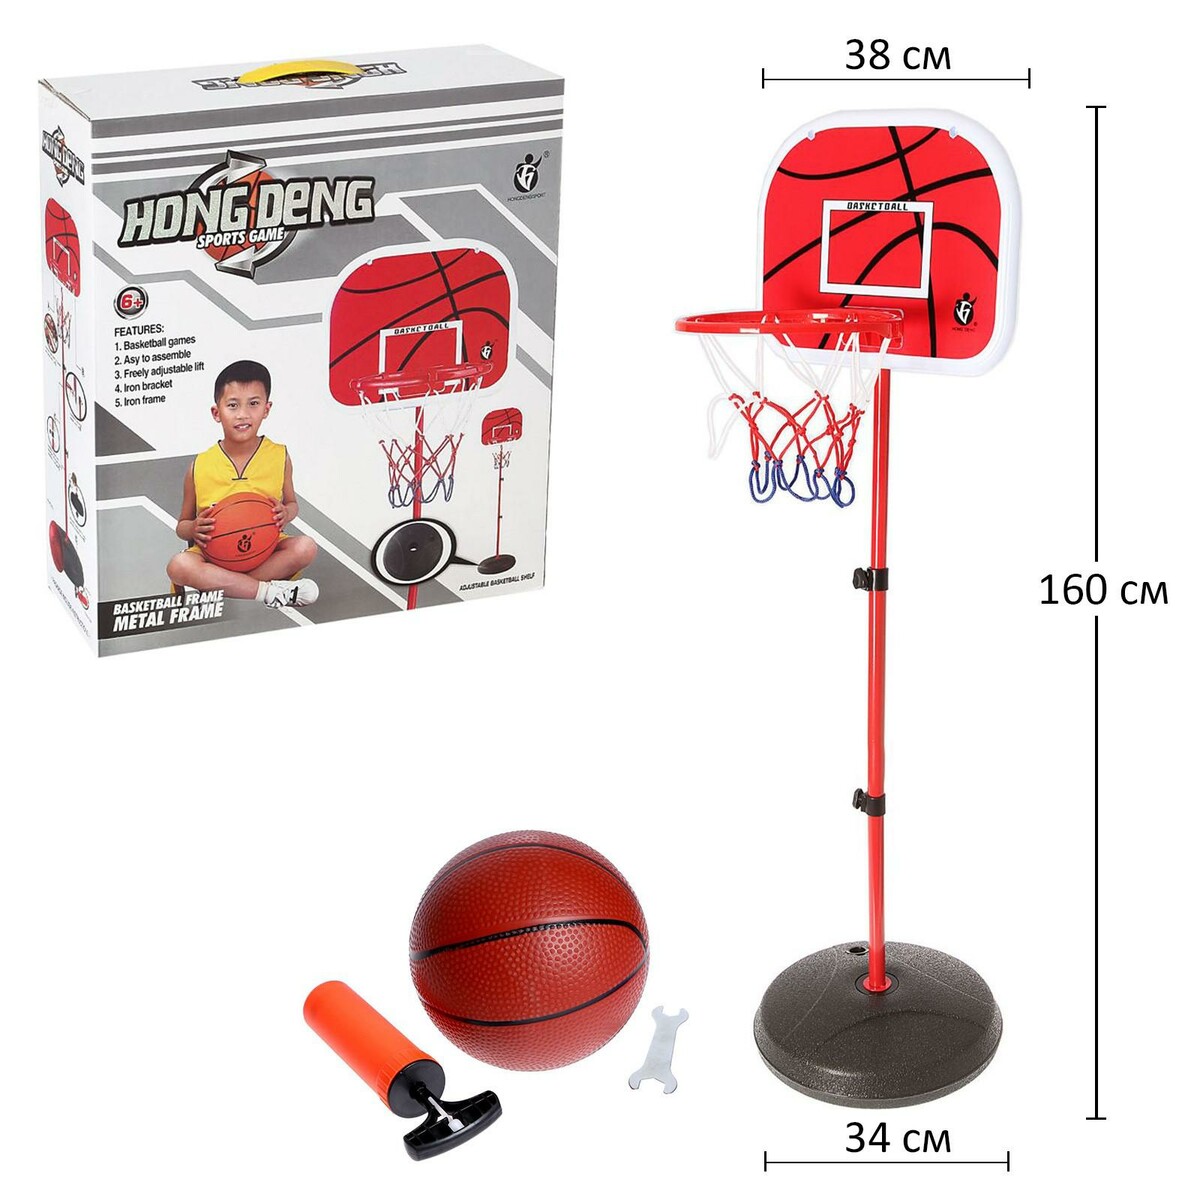 Баскетбольный набор мяч баскетбольный molten b7g3800 р 7